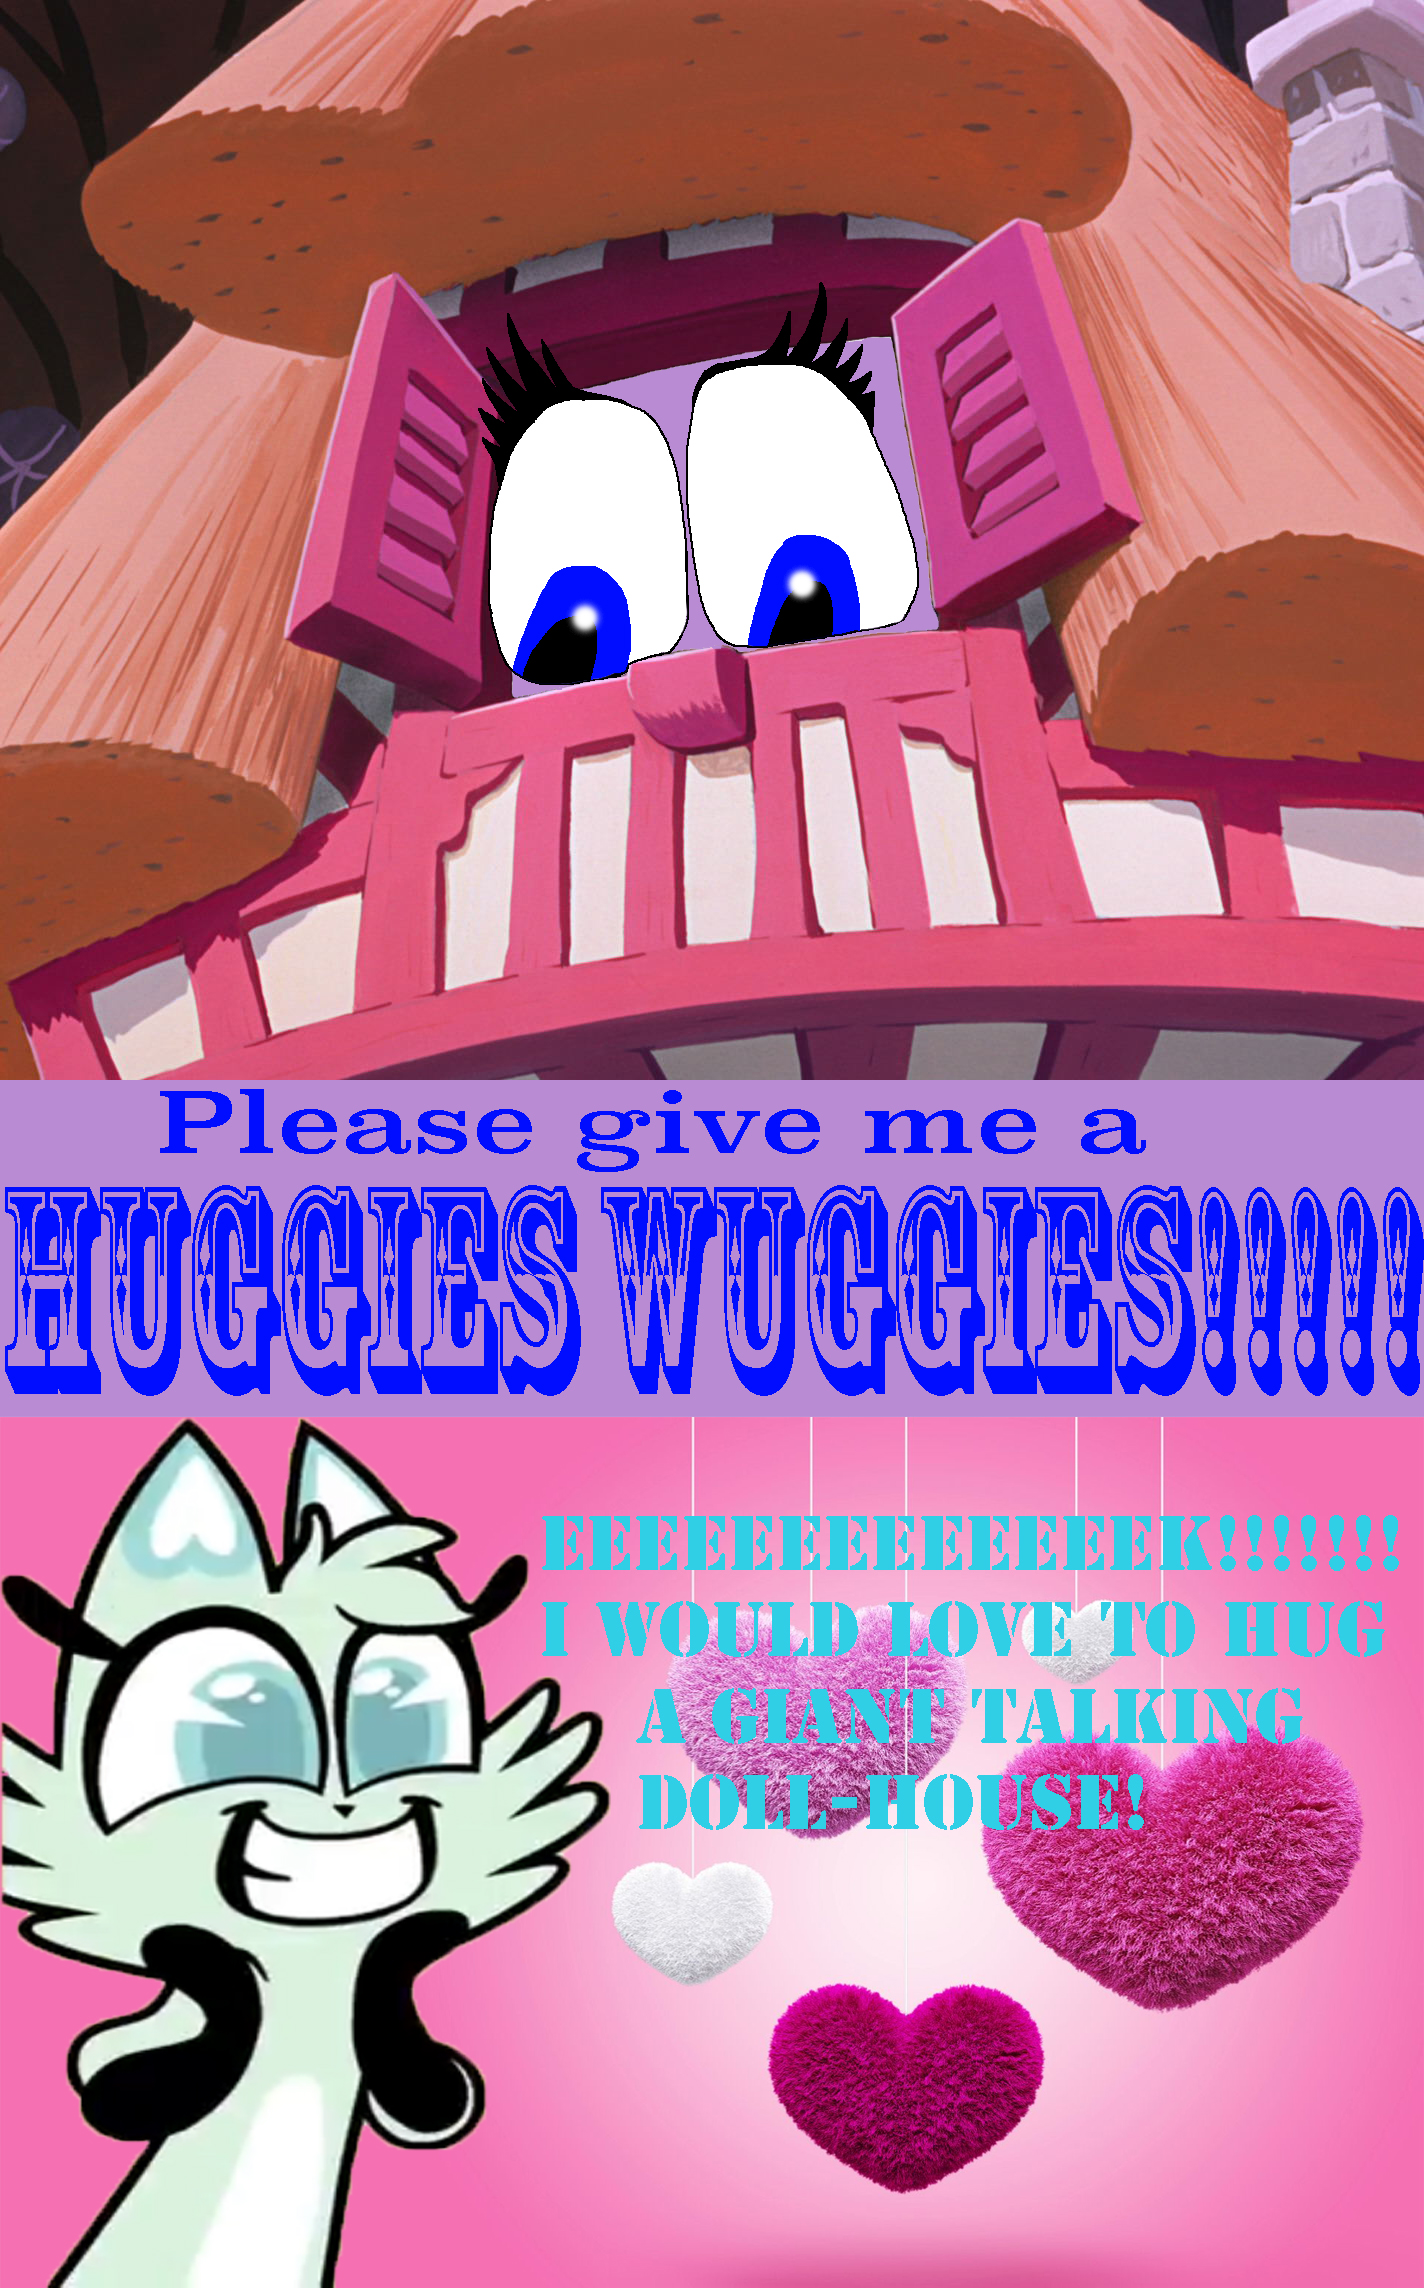 huggies waggies page